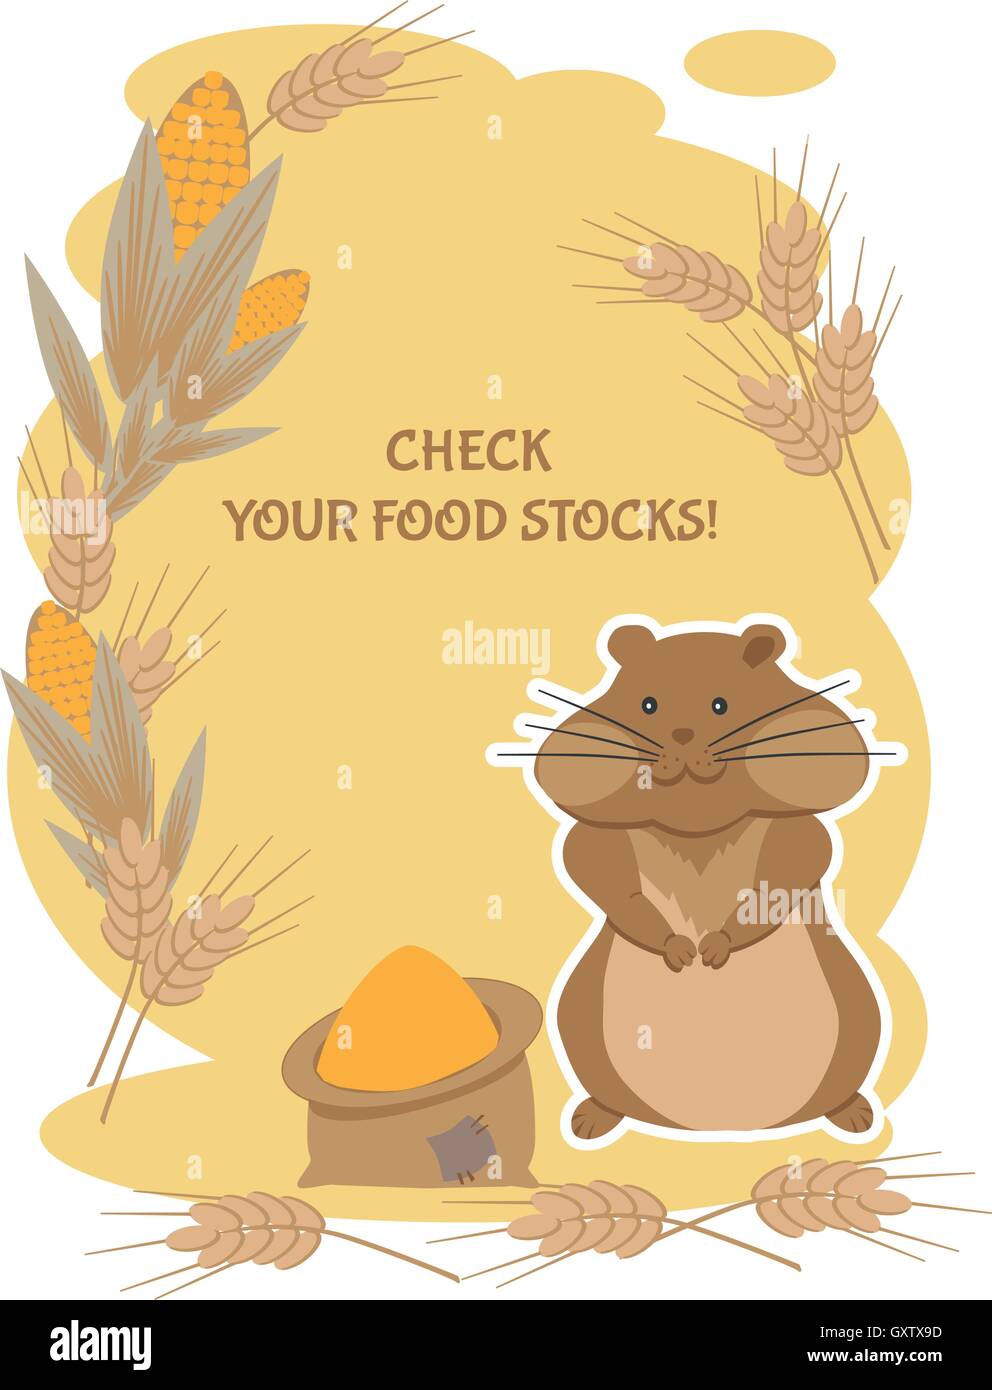 Hamster Thrifty vous conseille de vérifier vos stocks de produits alimentaires Illustration de Vecteur